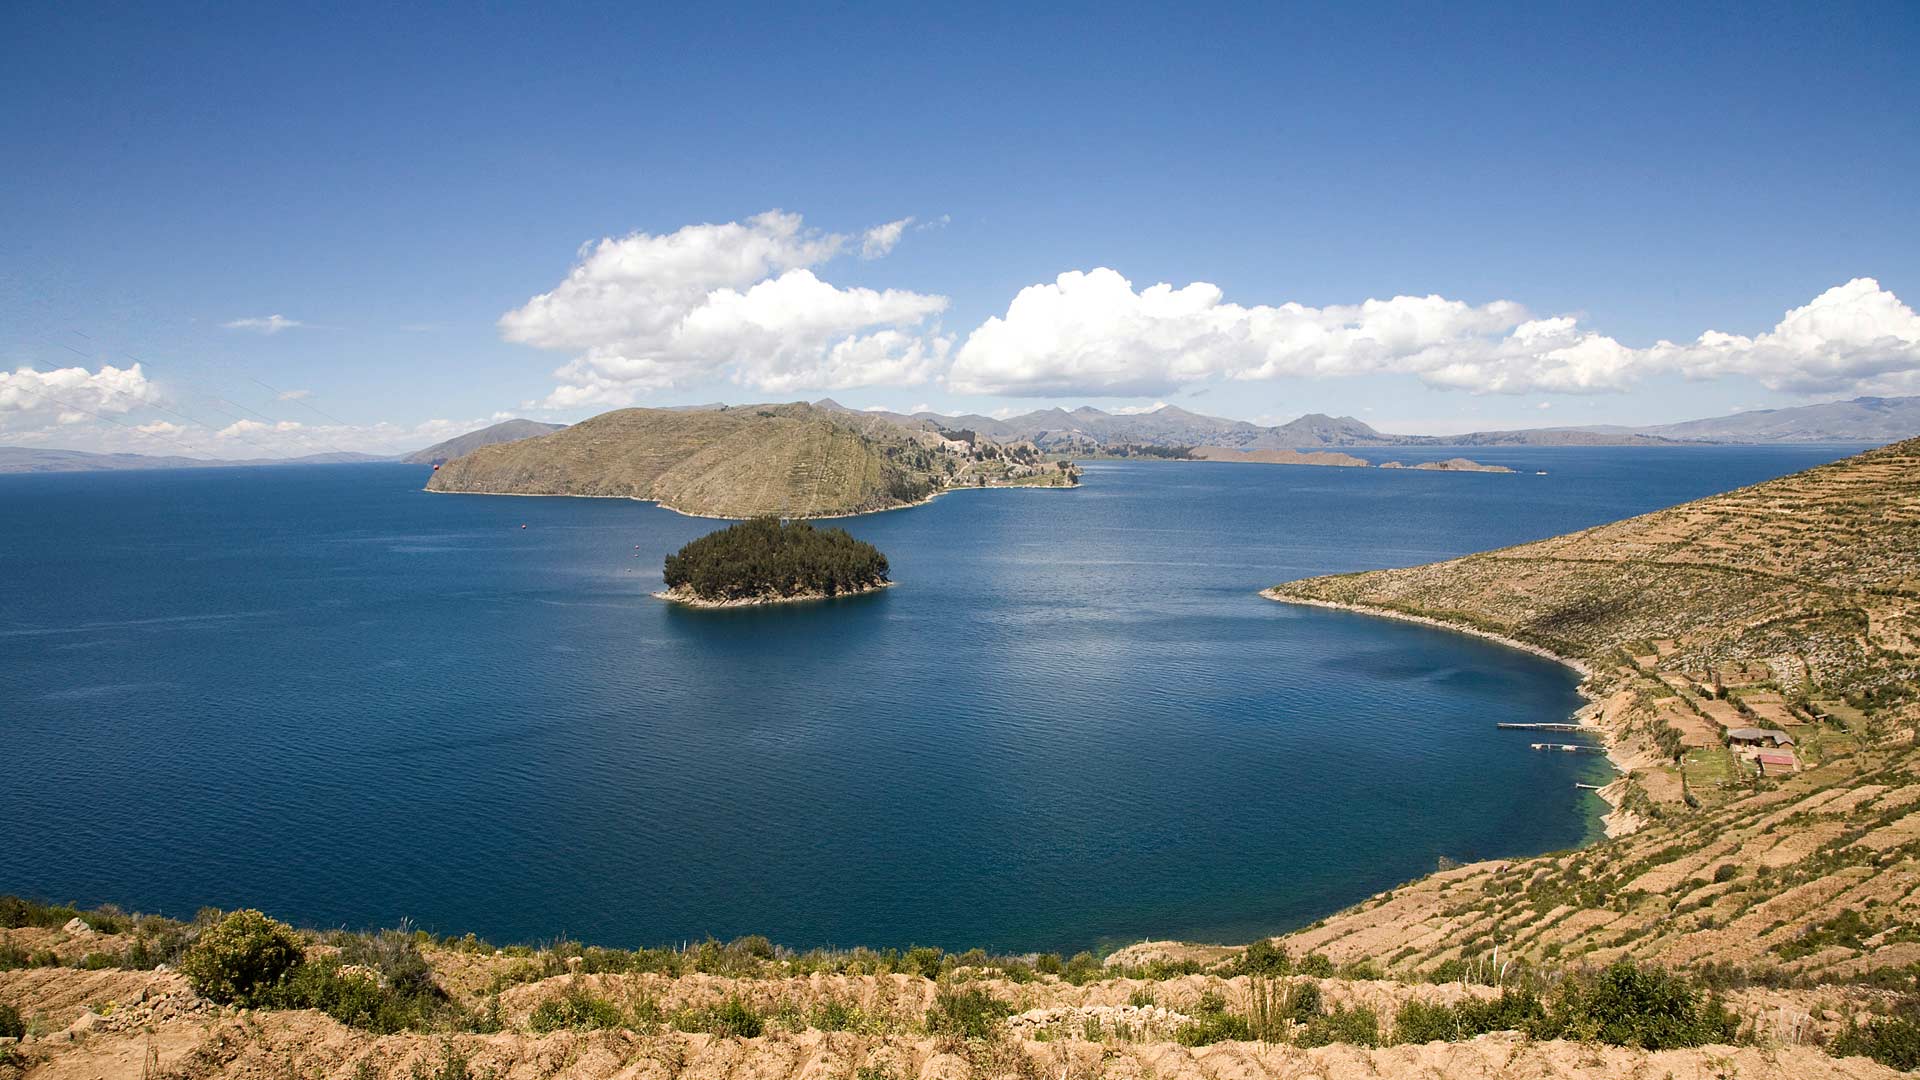 Bahía Kona del Norte as seen from the Isla del Sol in Titicaca Lake